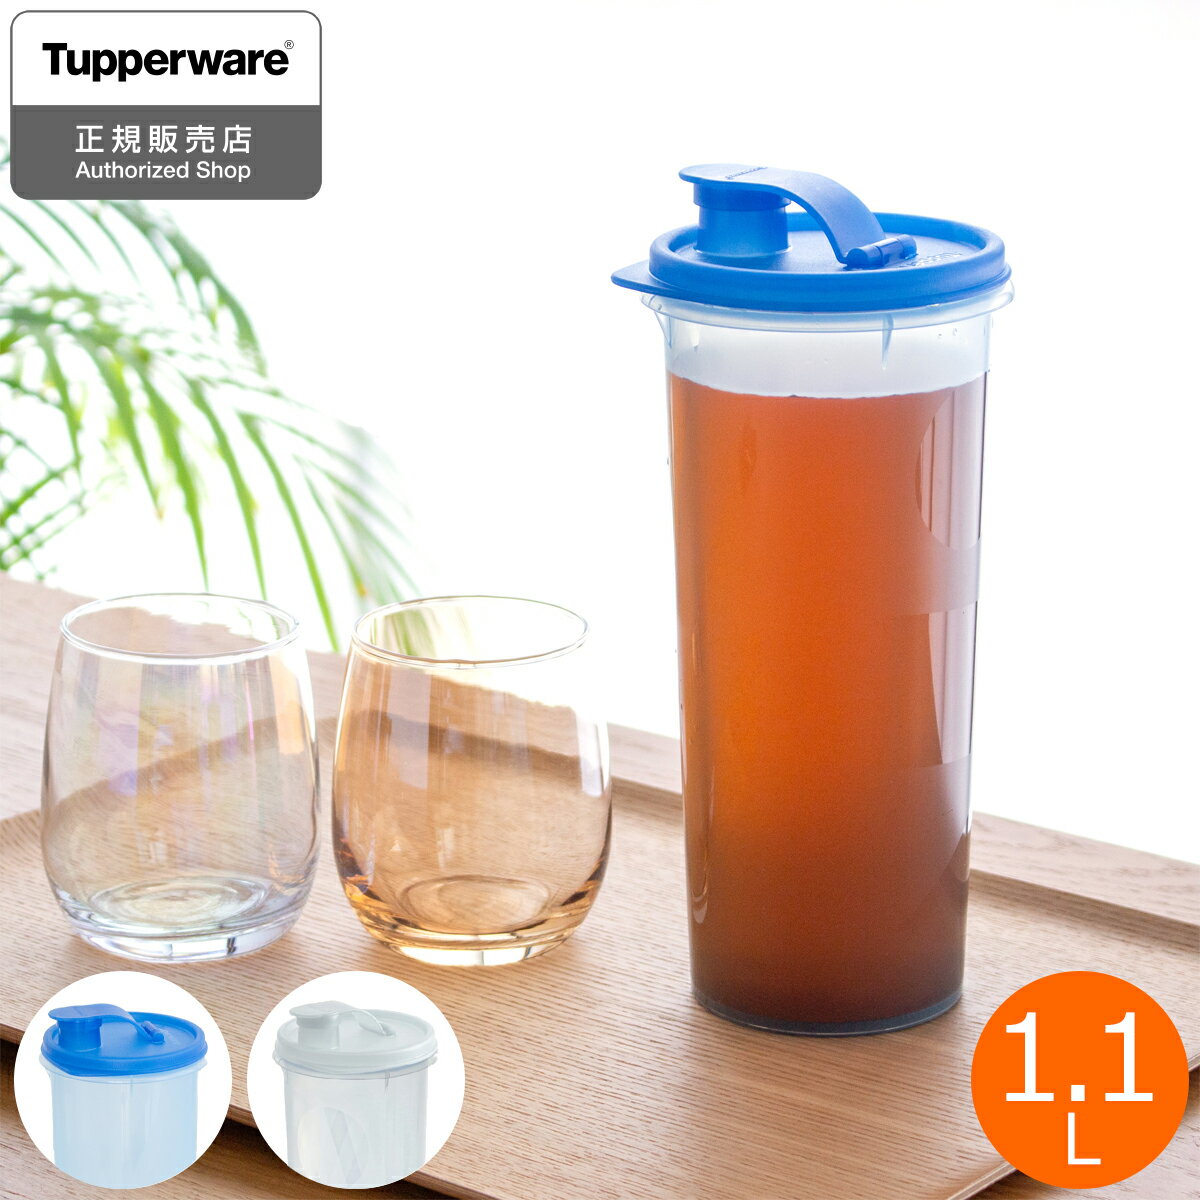 タッパーウェア 冷水筒 スリムジャグ 1.1L 1本 Sライン 麦茶ポット ピッチャー 冷水ポット 冷蔵庫 密閉 食洗機対応 タッパー 10年保証 Tupperware